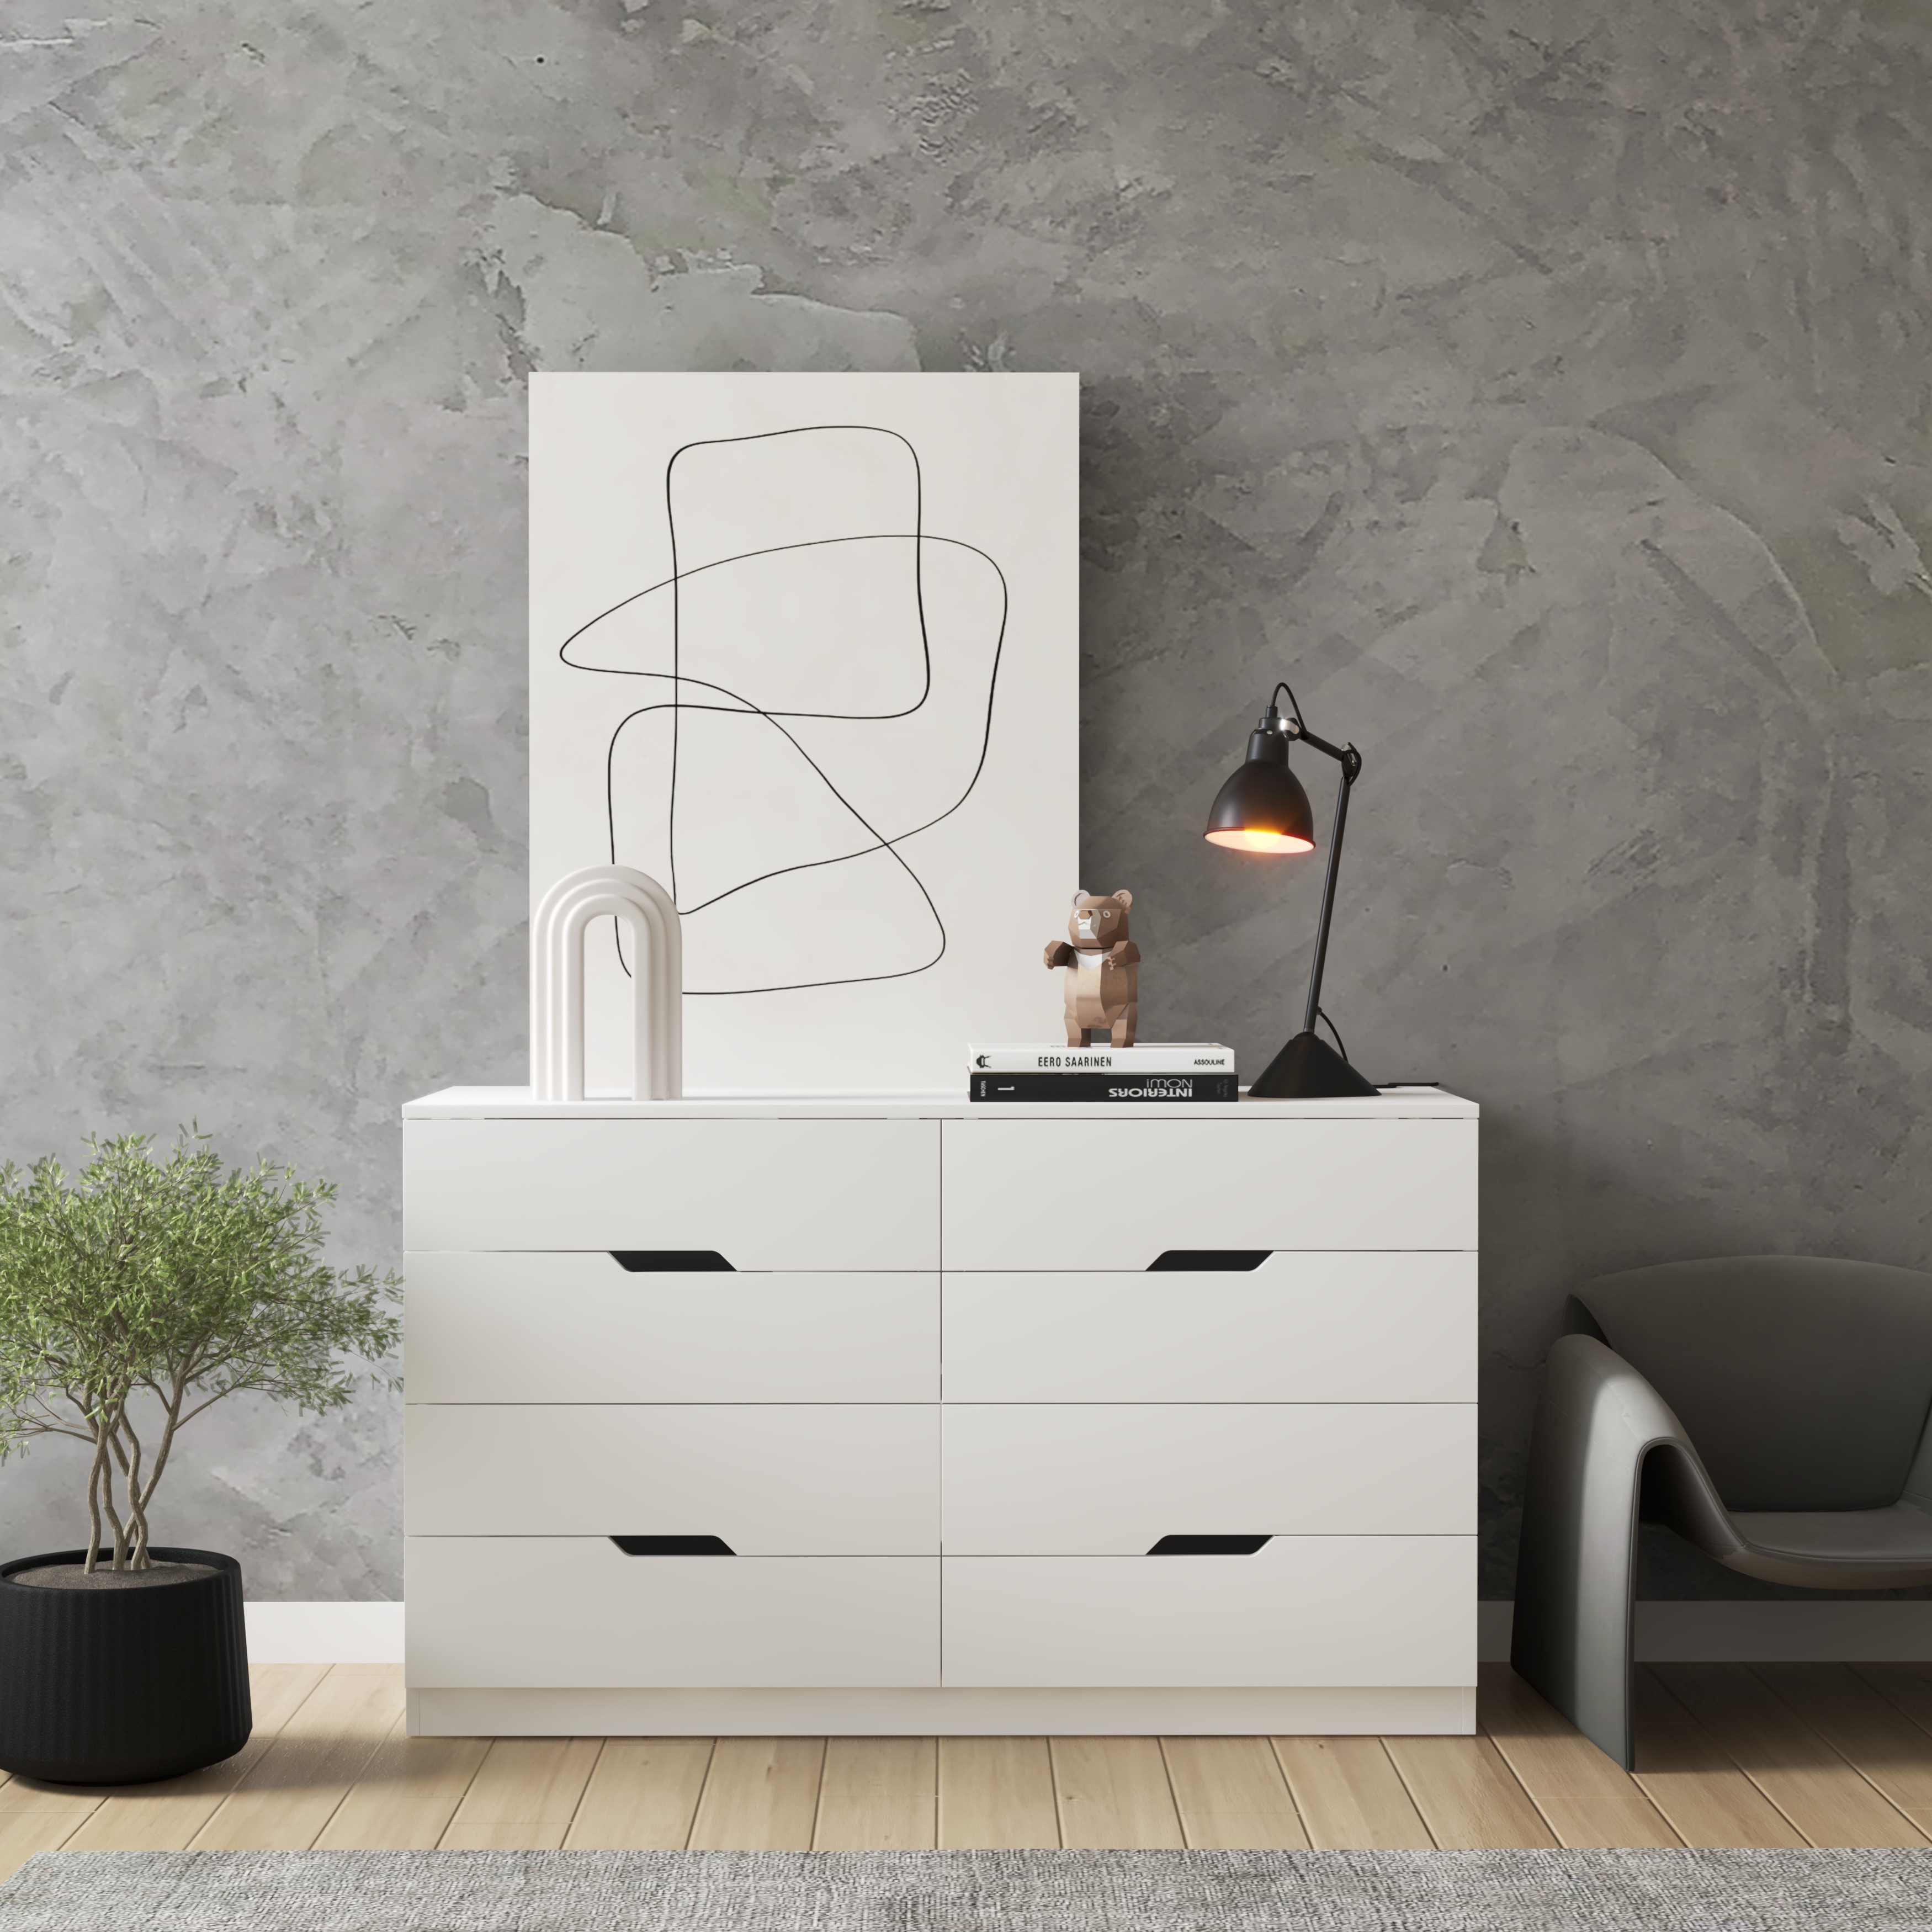 [Happy Home Furniture] DASH , Tủ đựng đồ - 8 ngăn kéo , 132cm x 46cm x 78cm ( DxRxC), THK_053